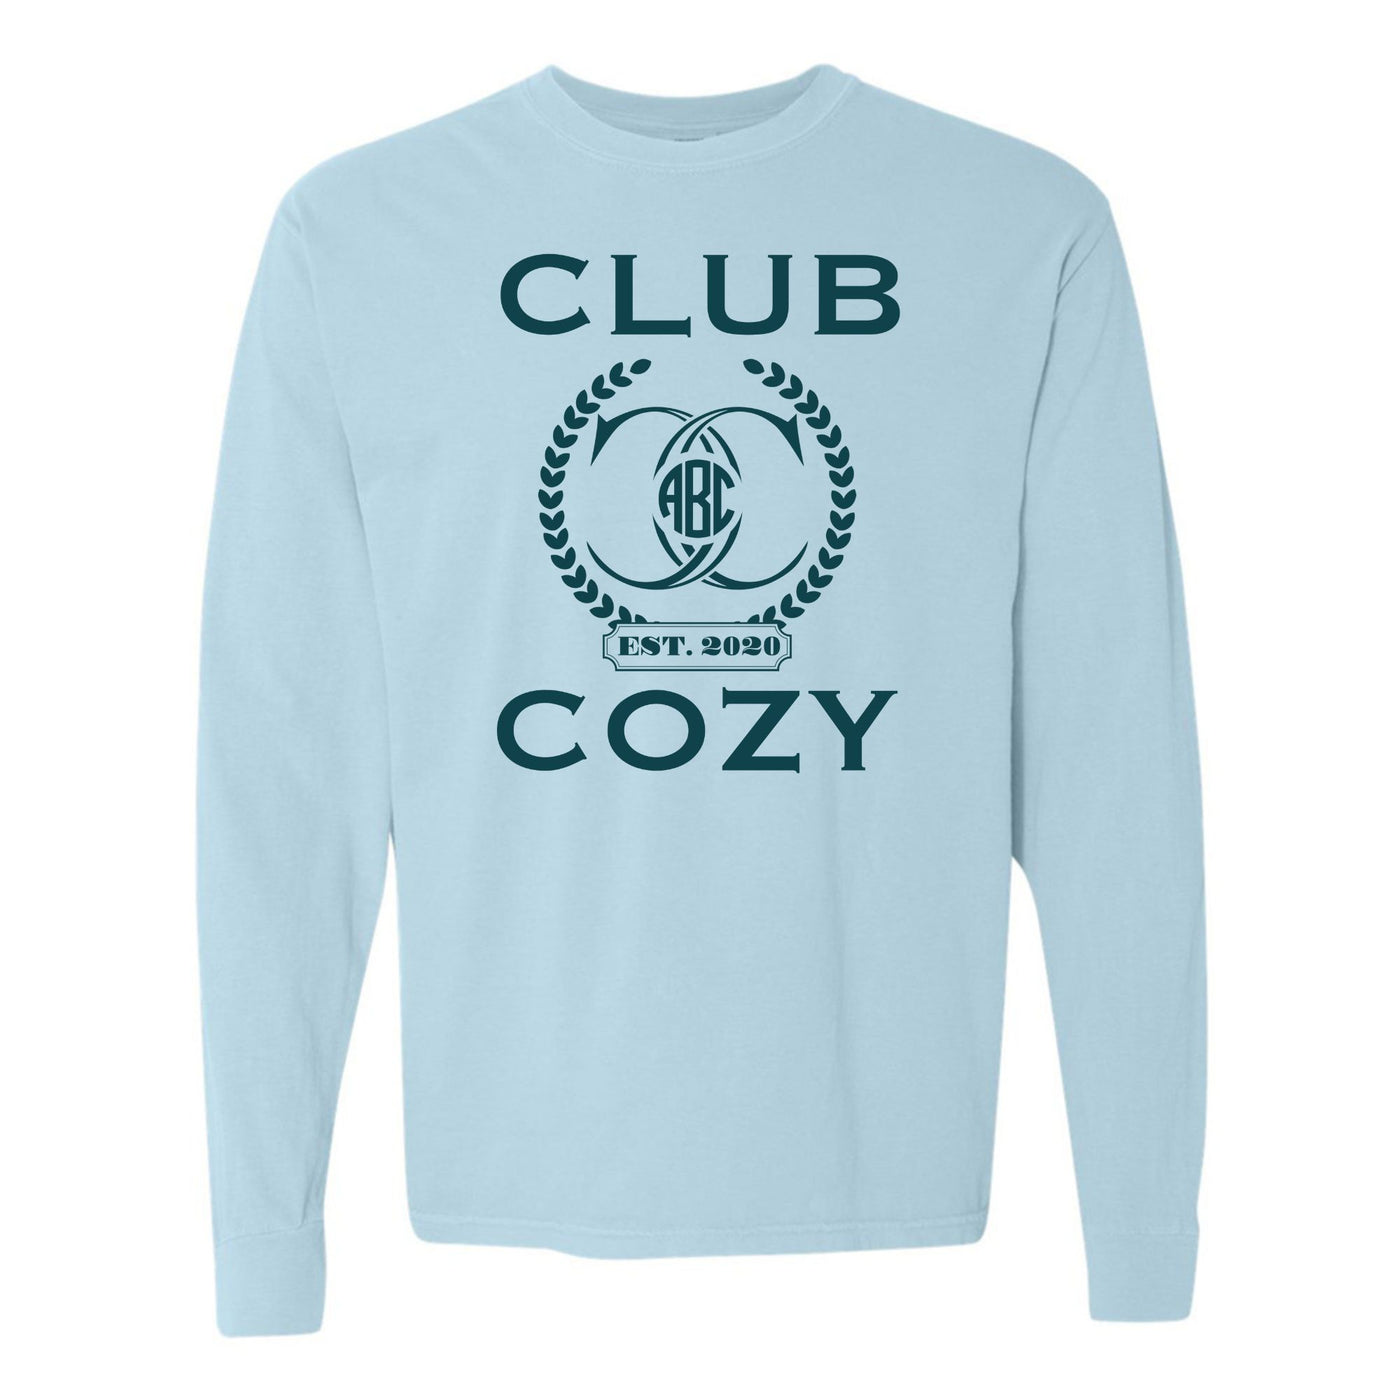 Monogramed 'Club Cozy' Long Sleeve T-Shirt